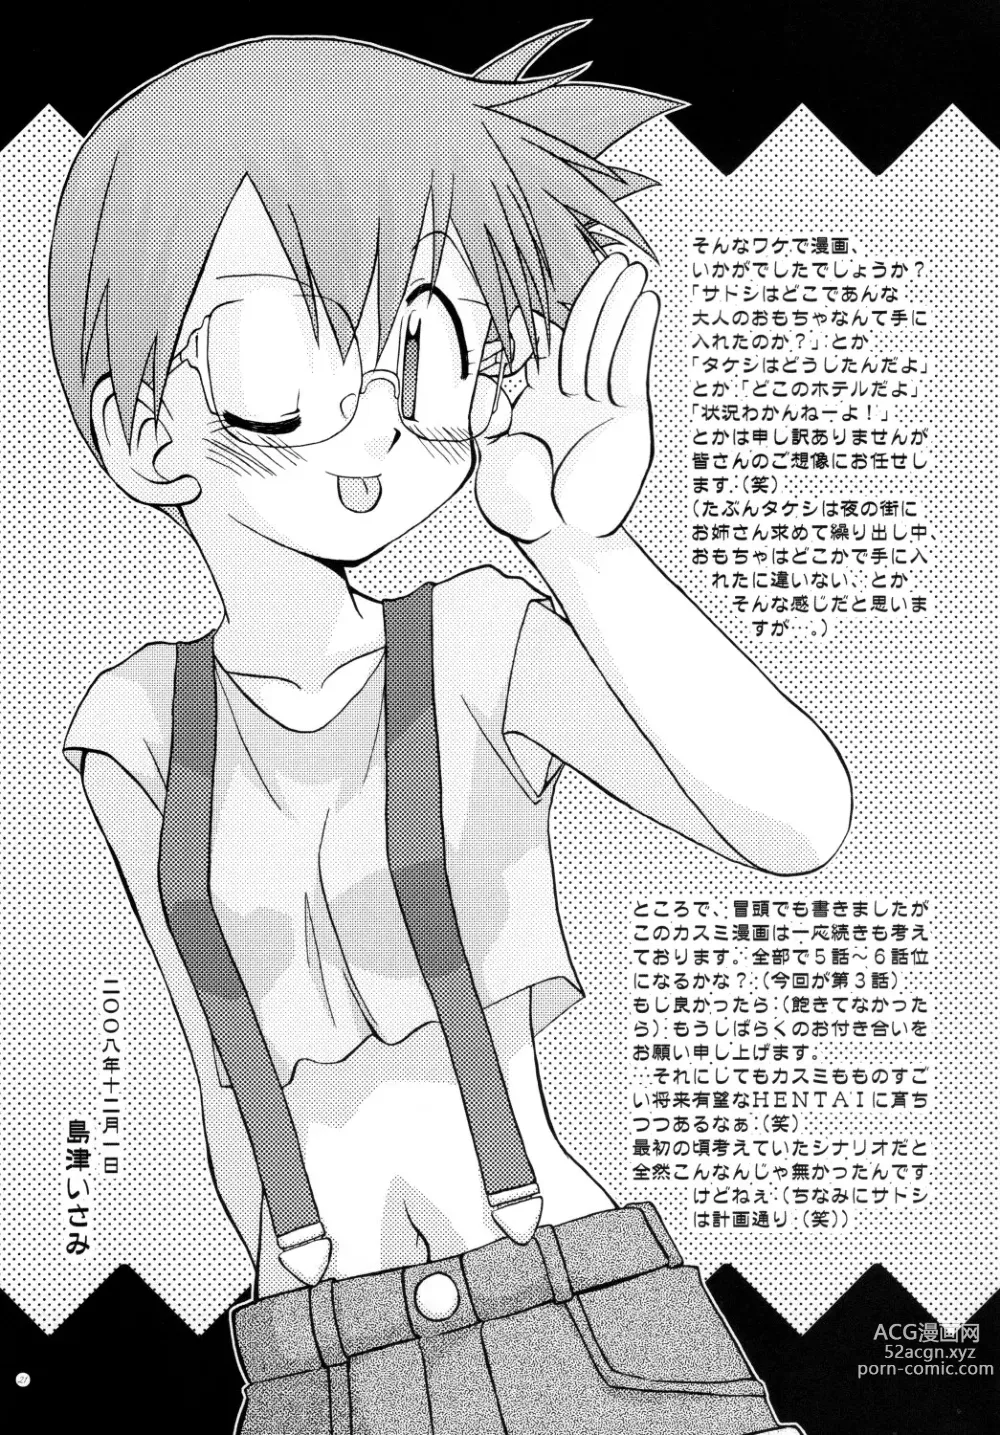 Page 4 of doujinshi Mada Mada Shiranai Koto no Takarabako